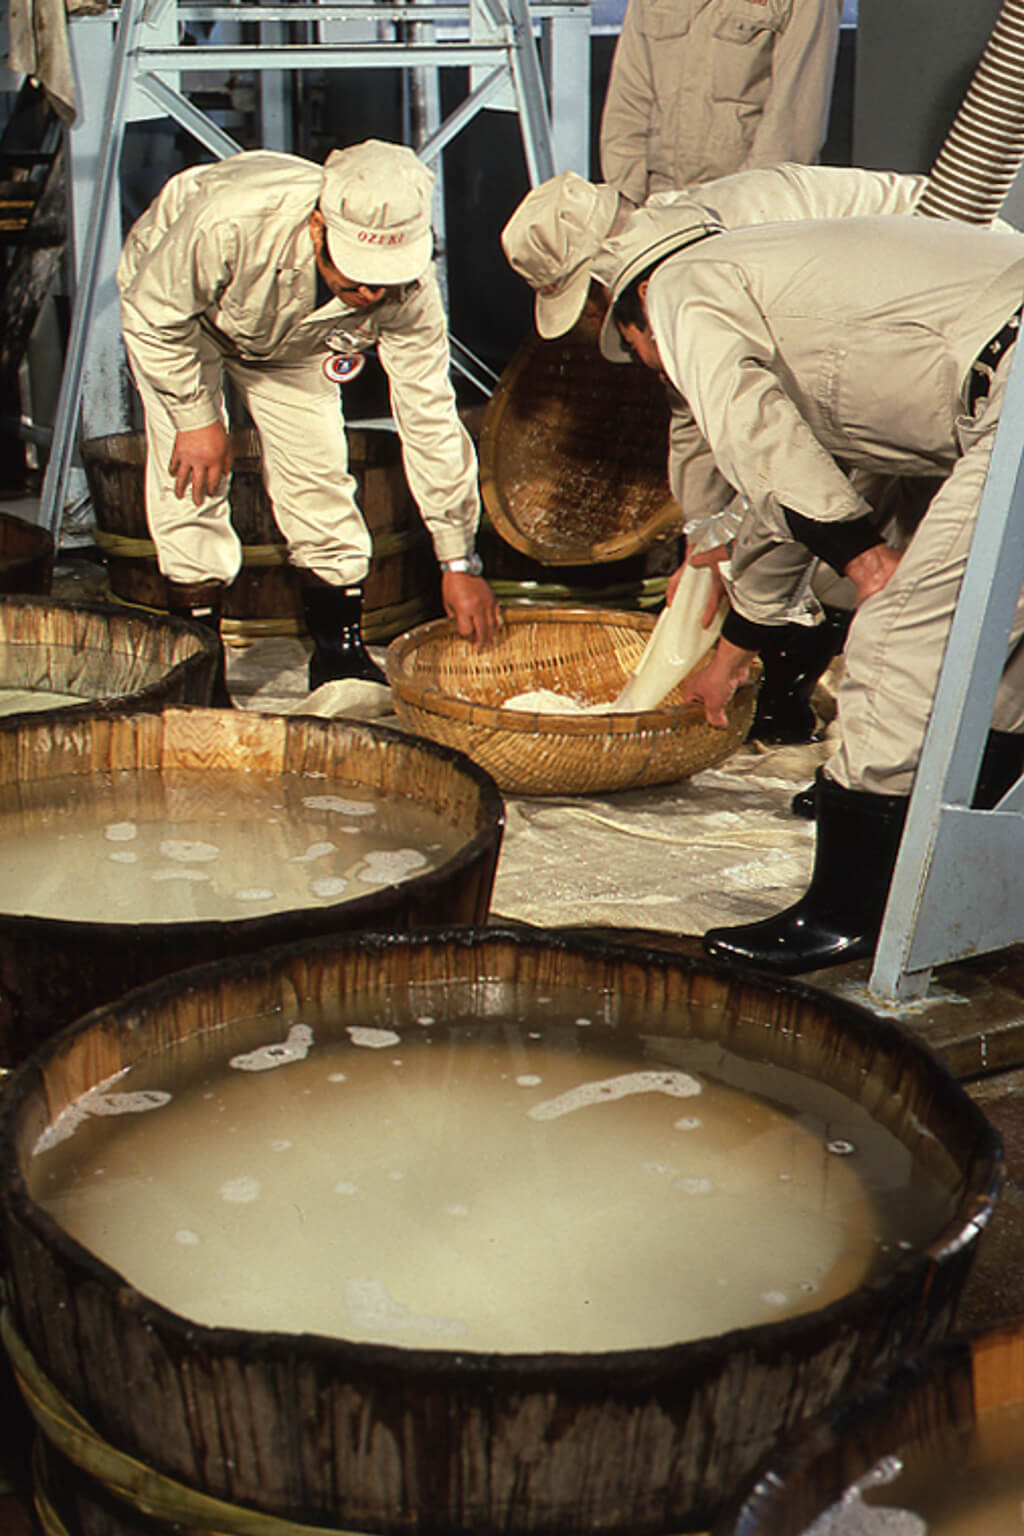 Brewery workers called “kurabito” prepare the rice for sake making